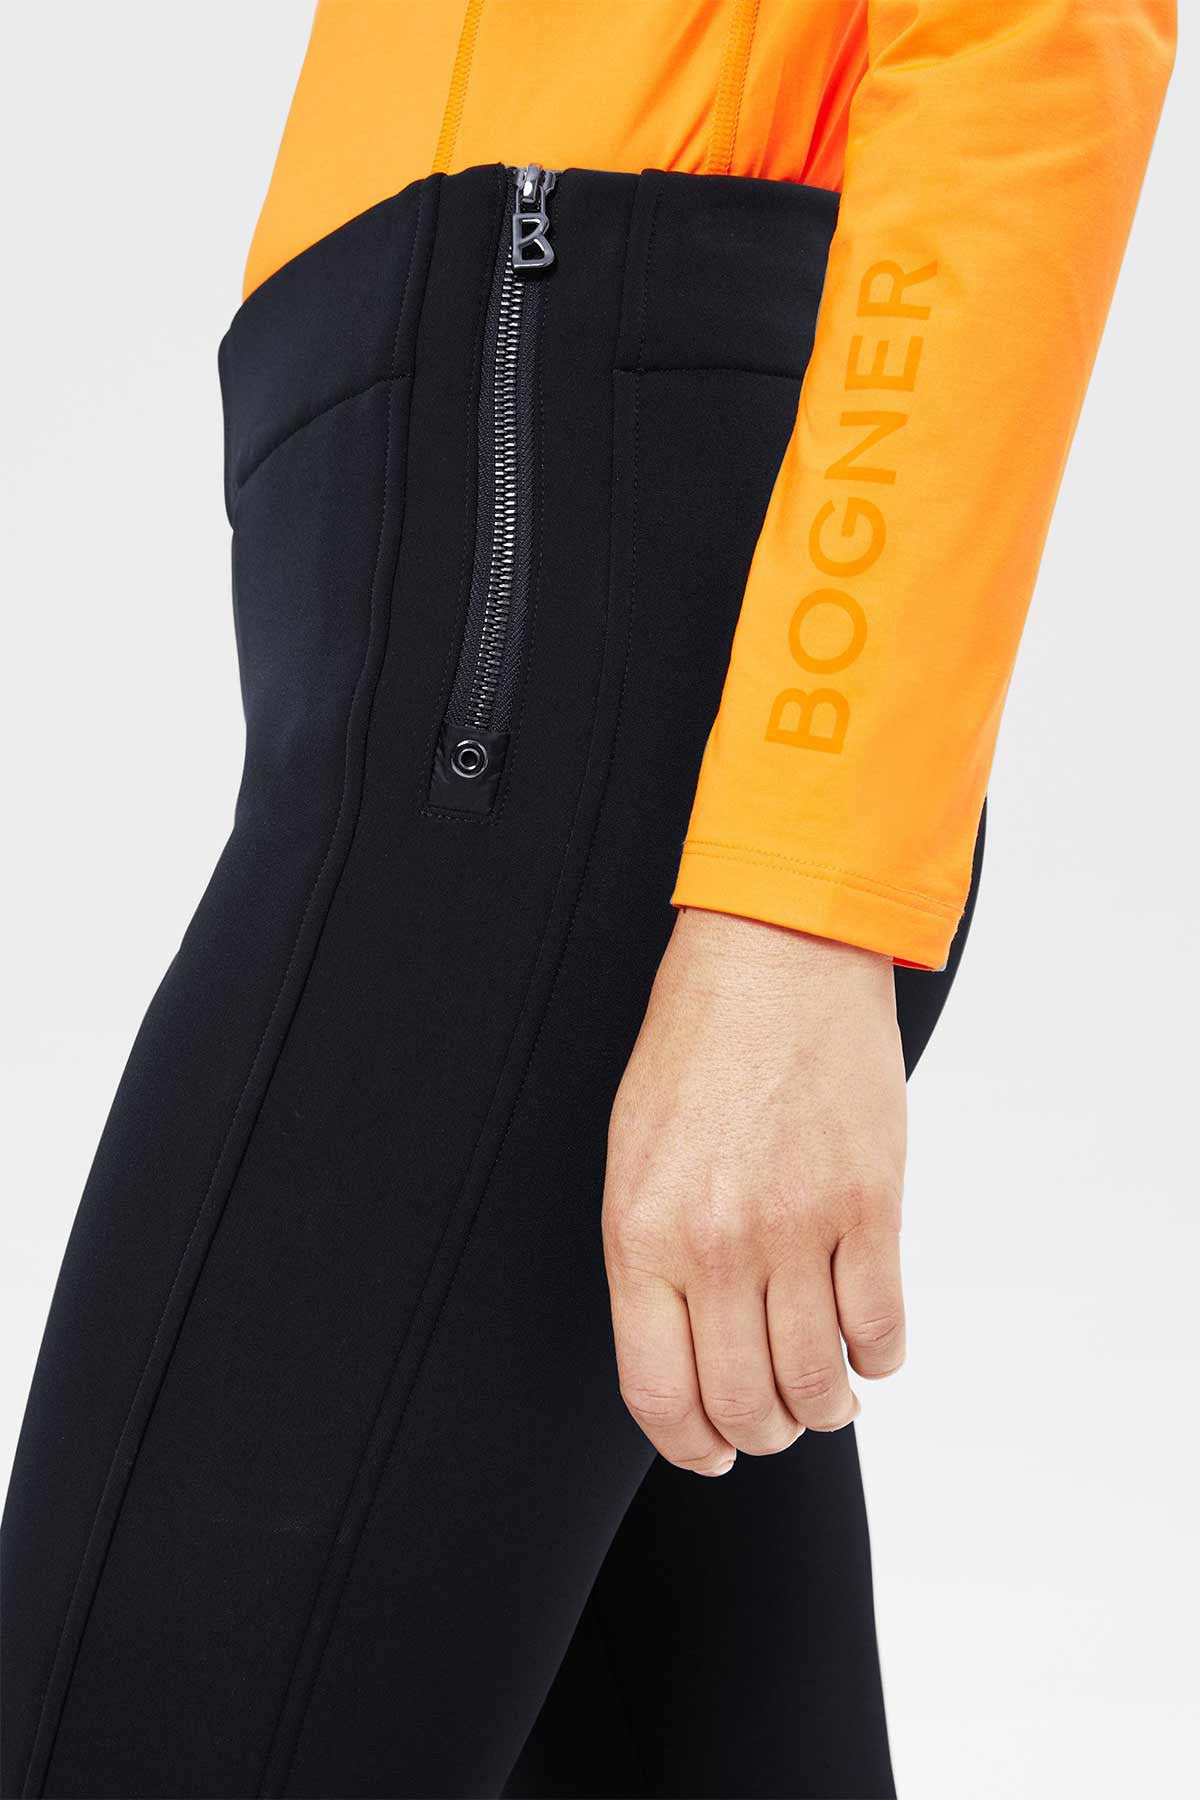 Bogner Roma Kayak Pantolonu-Libas Trendy Fashion Store